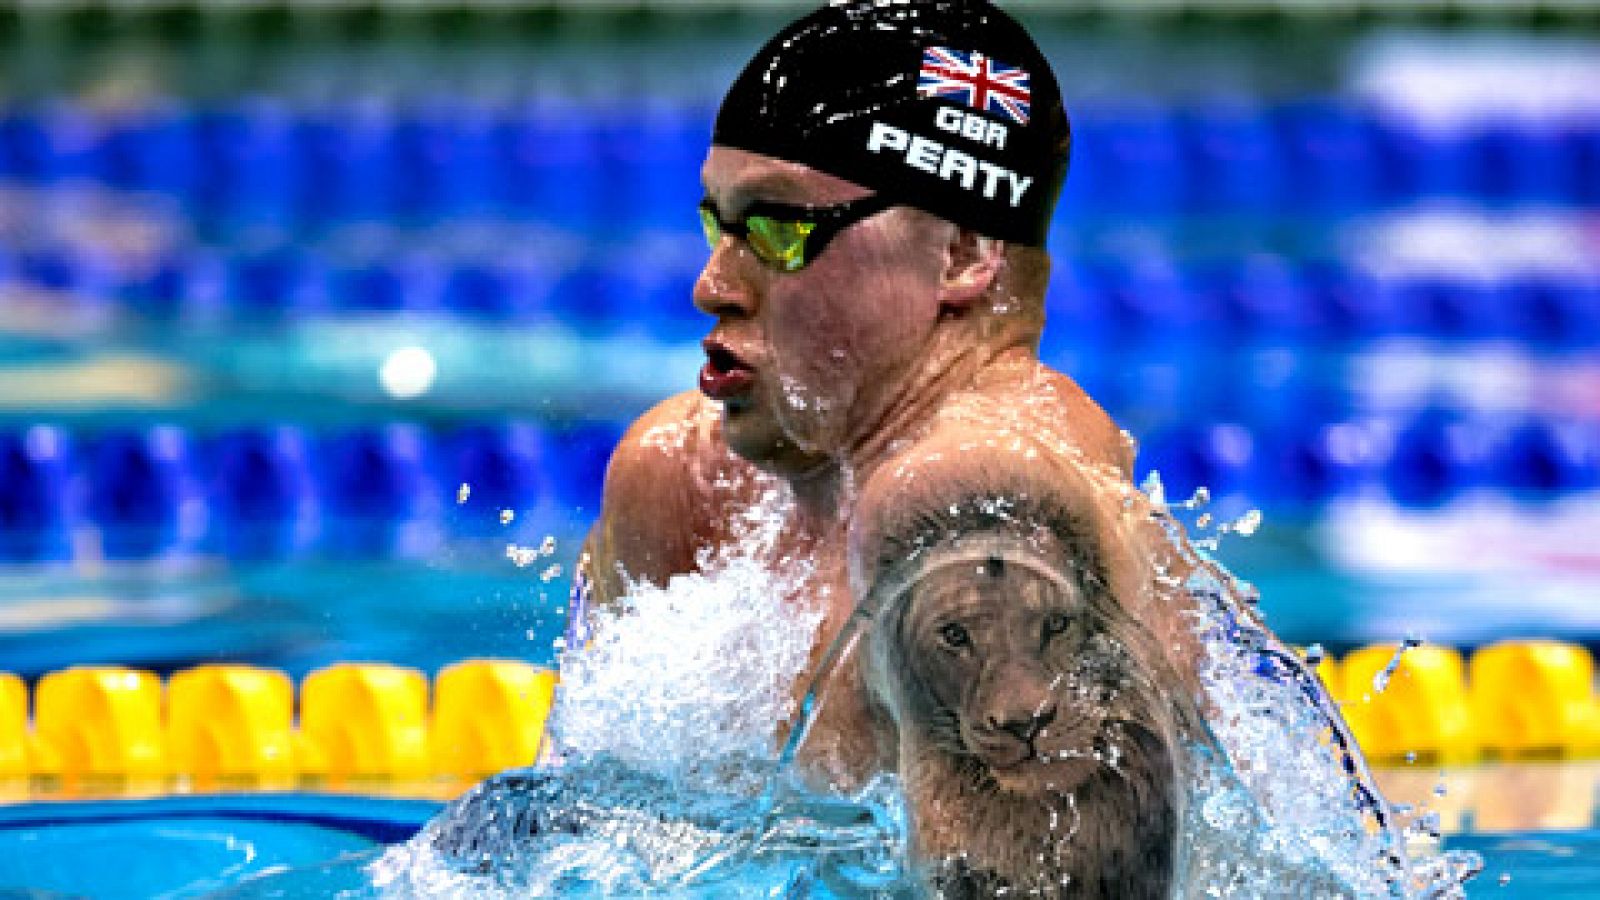 El británico Adam Peaty, que en la sesión matinal había batido el récord del mundo en los 50 braza, ha vuelto a rebajar su tope mundial en la semifinal de la tarde y se ha convertido en el primer hombre en nadar la distancia por debajo de 26 segundos